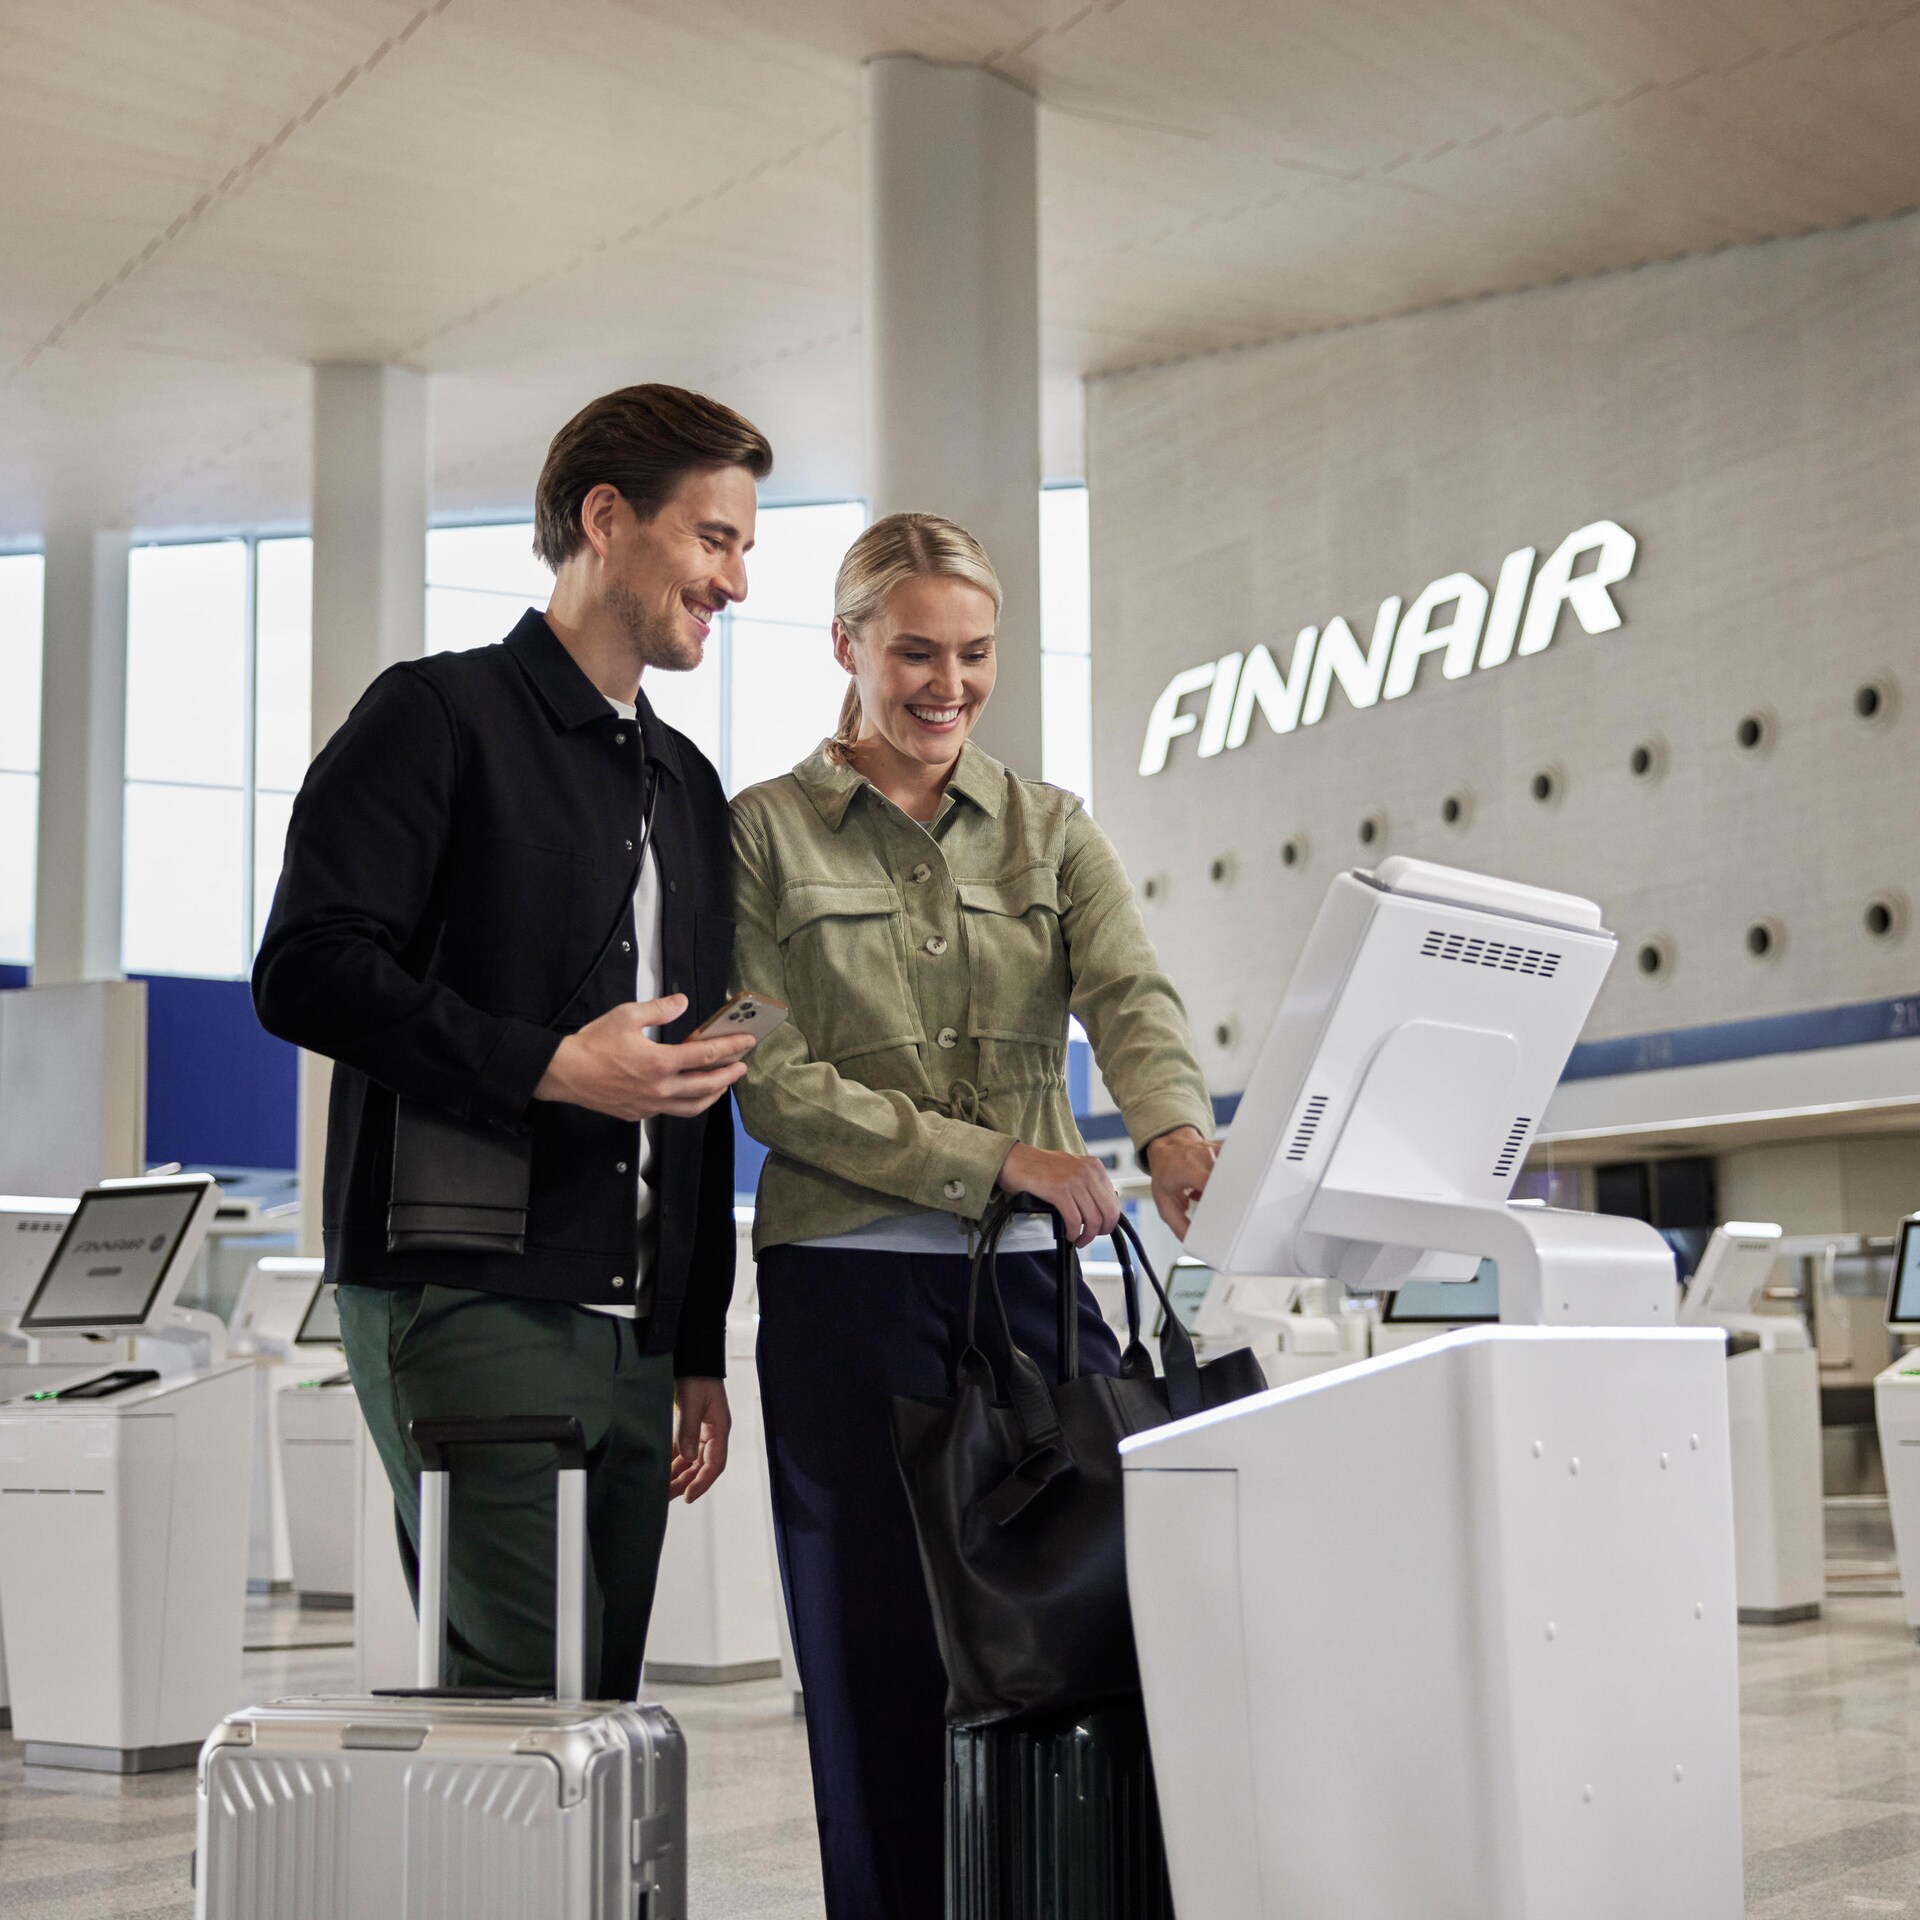 Baggage on Finnair flights